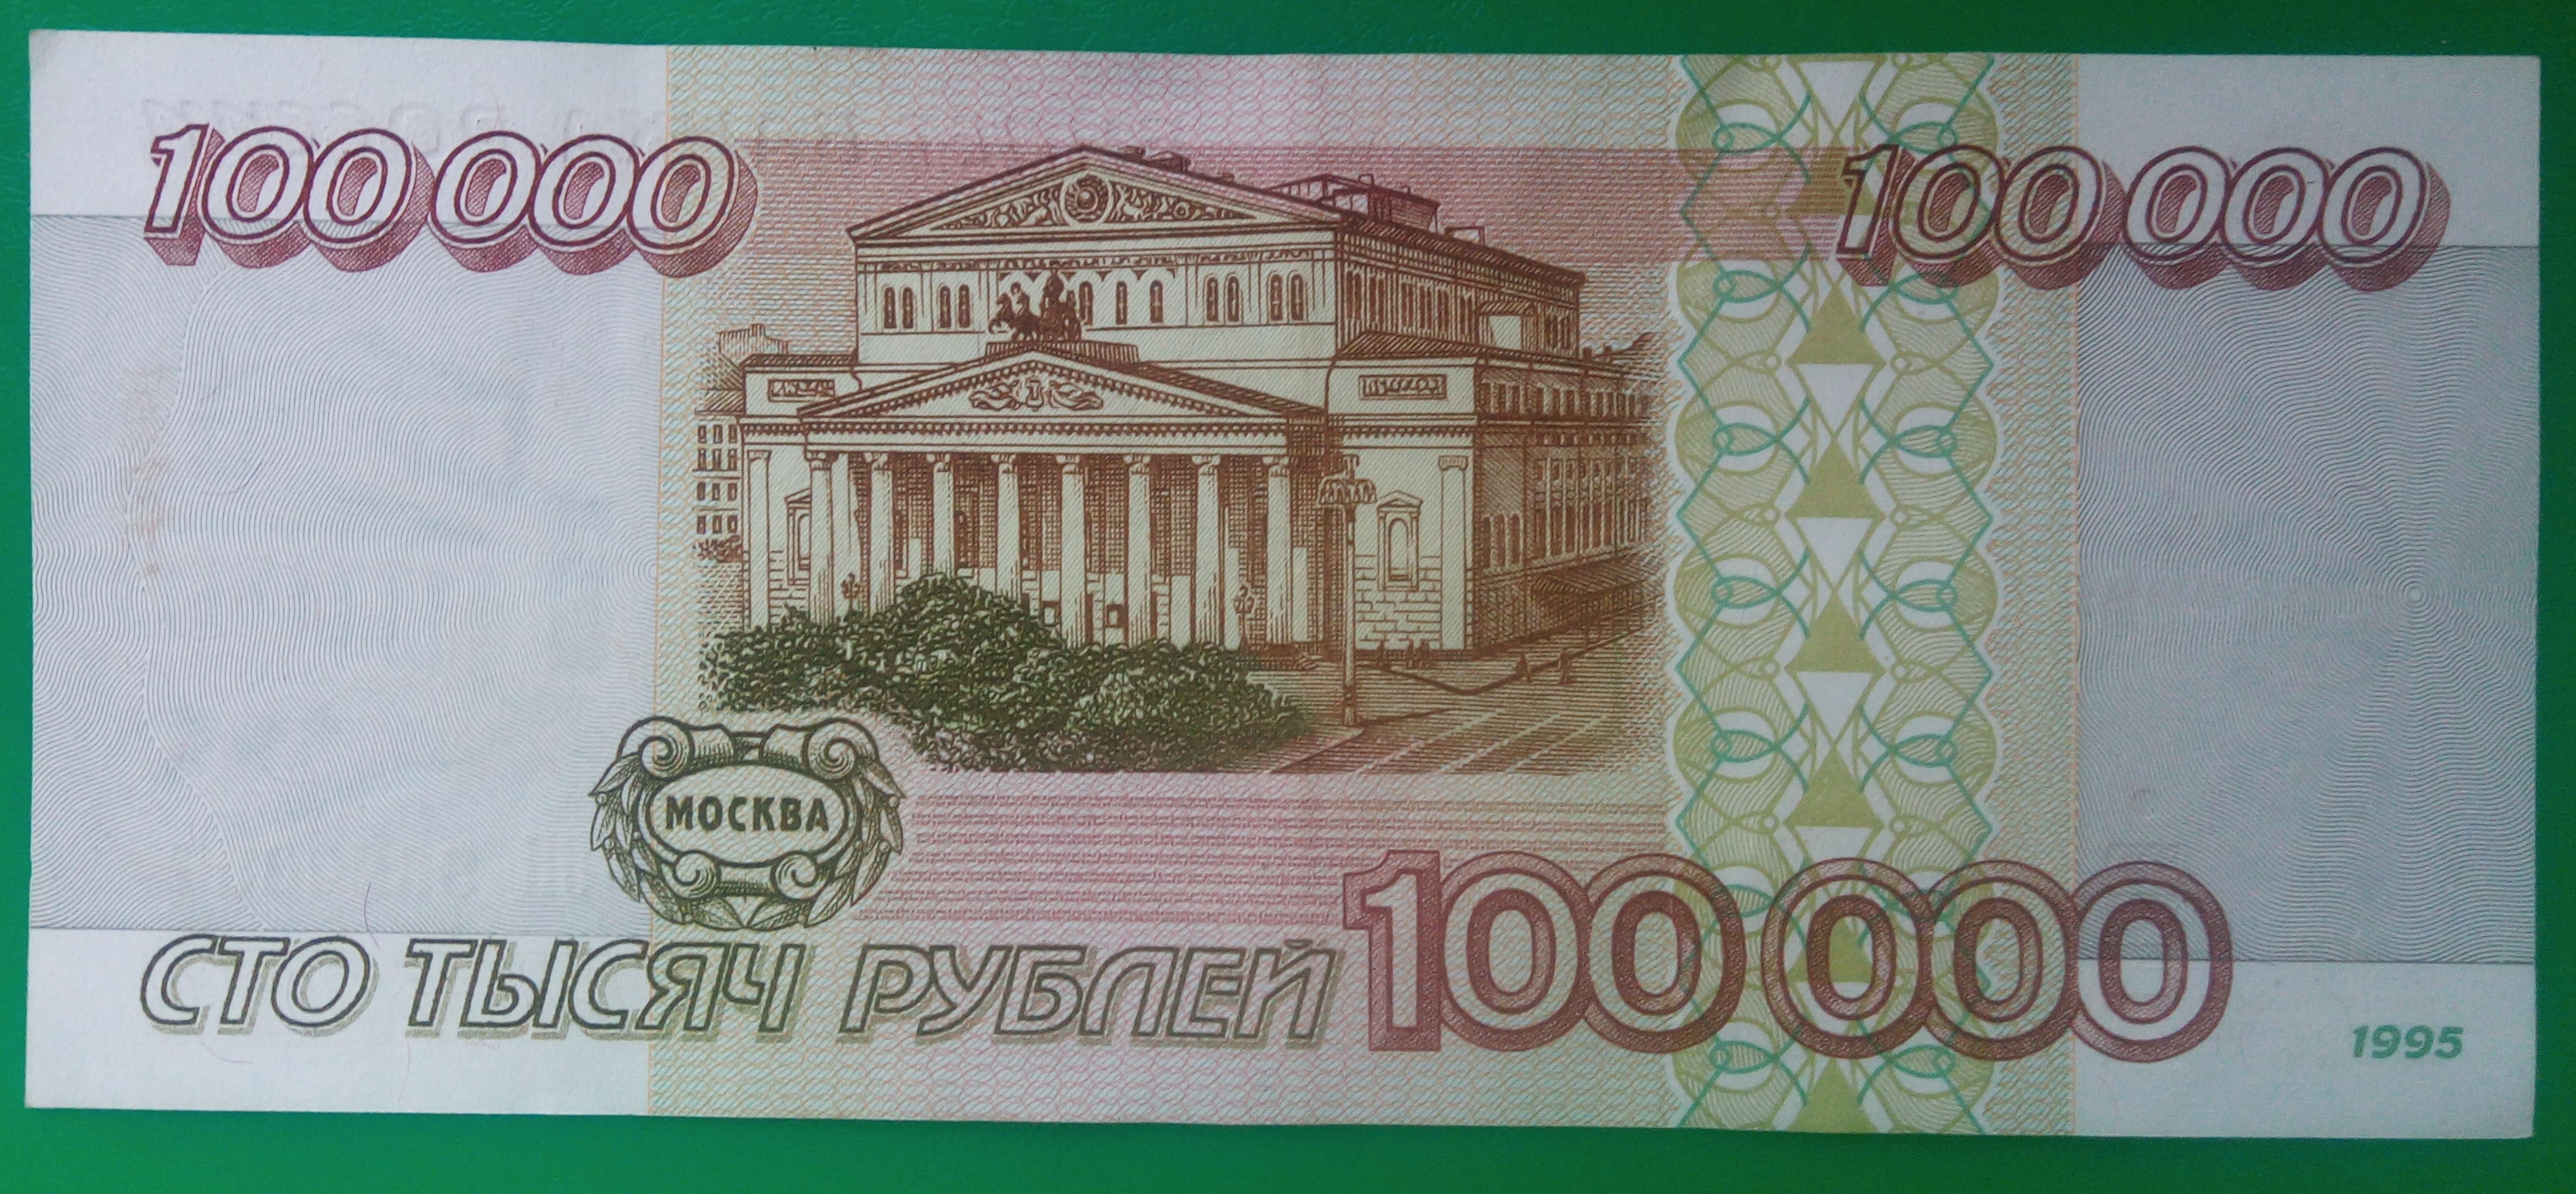 10000000000000 денег. СТО рублей. Купюра 100 рублей. Купюры 1995 года. 100 00 Рублей купюра.